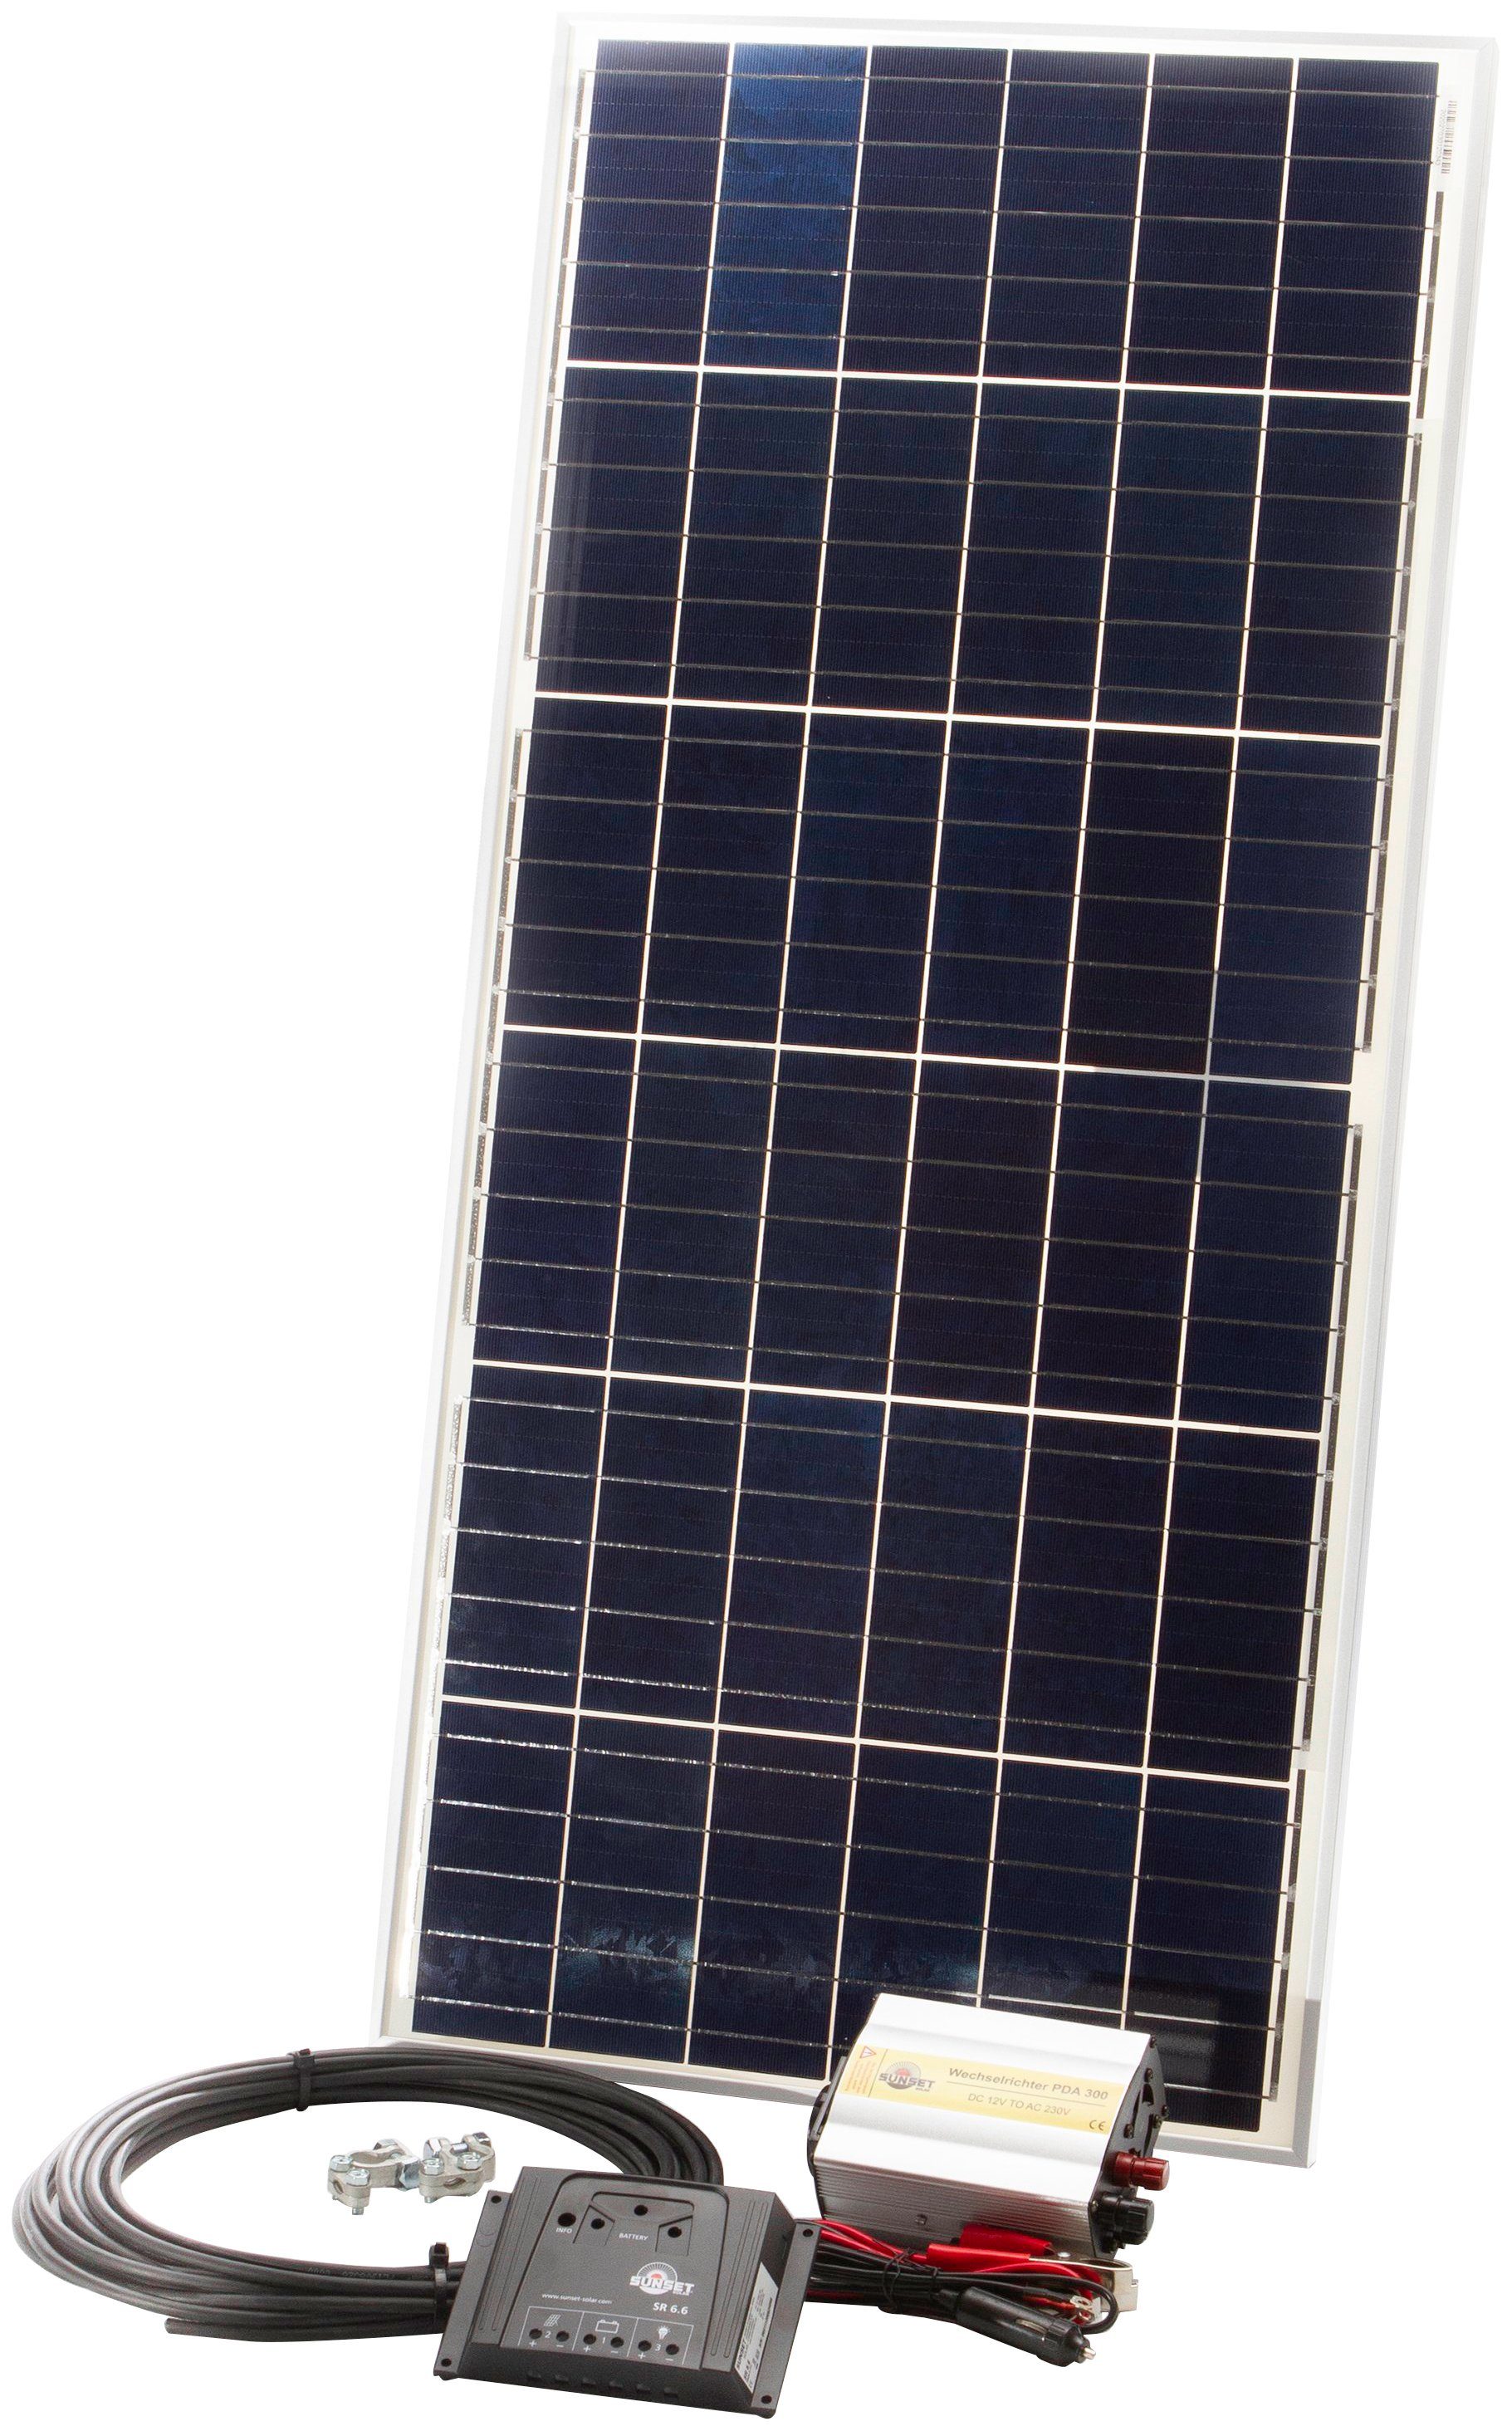 Sunset Solarmodul Einsteiger-Stomset 45 Watt, 230 V, 45 W, Polykristallin, (Set), für den Freizeitbereich